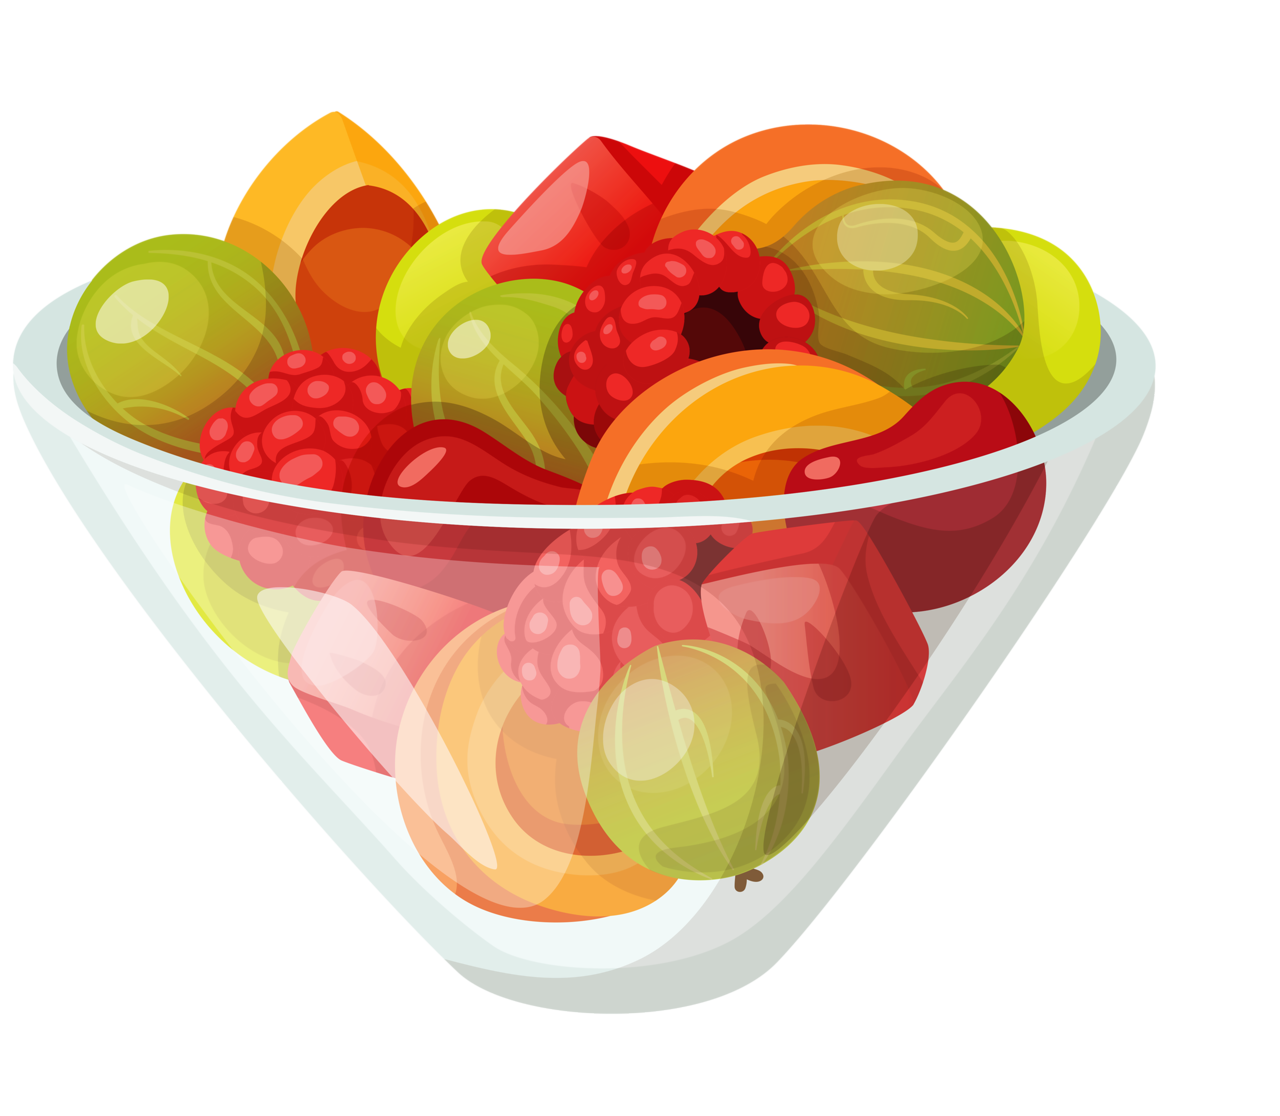 Ensalada de frutas Imagen Transparente